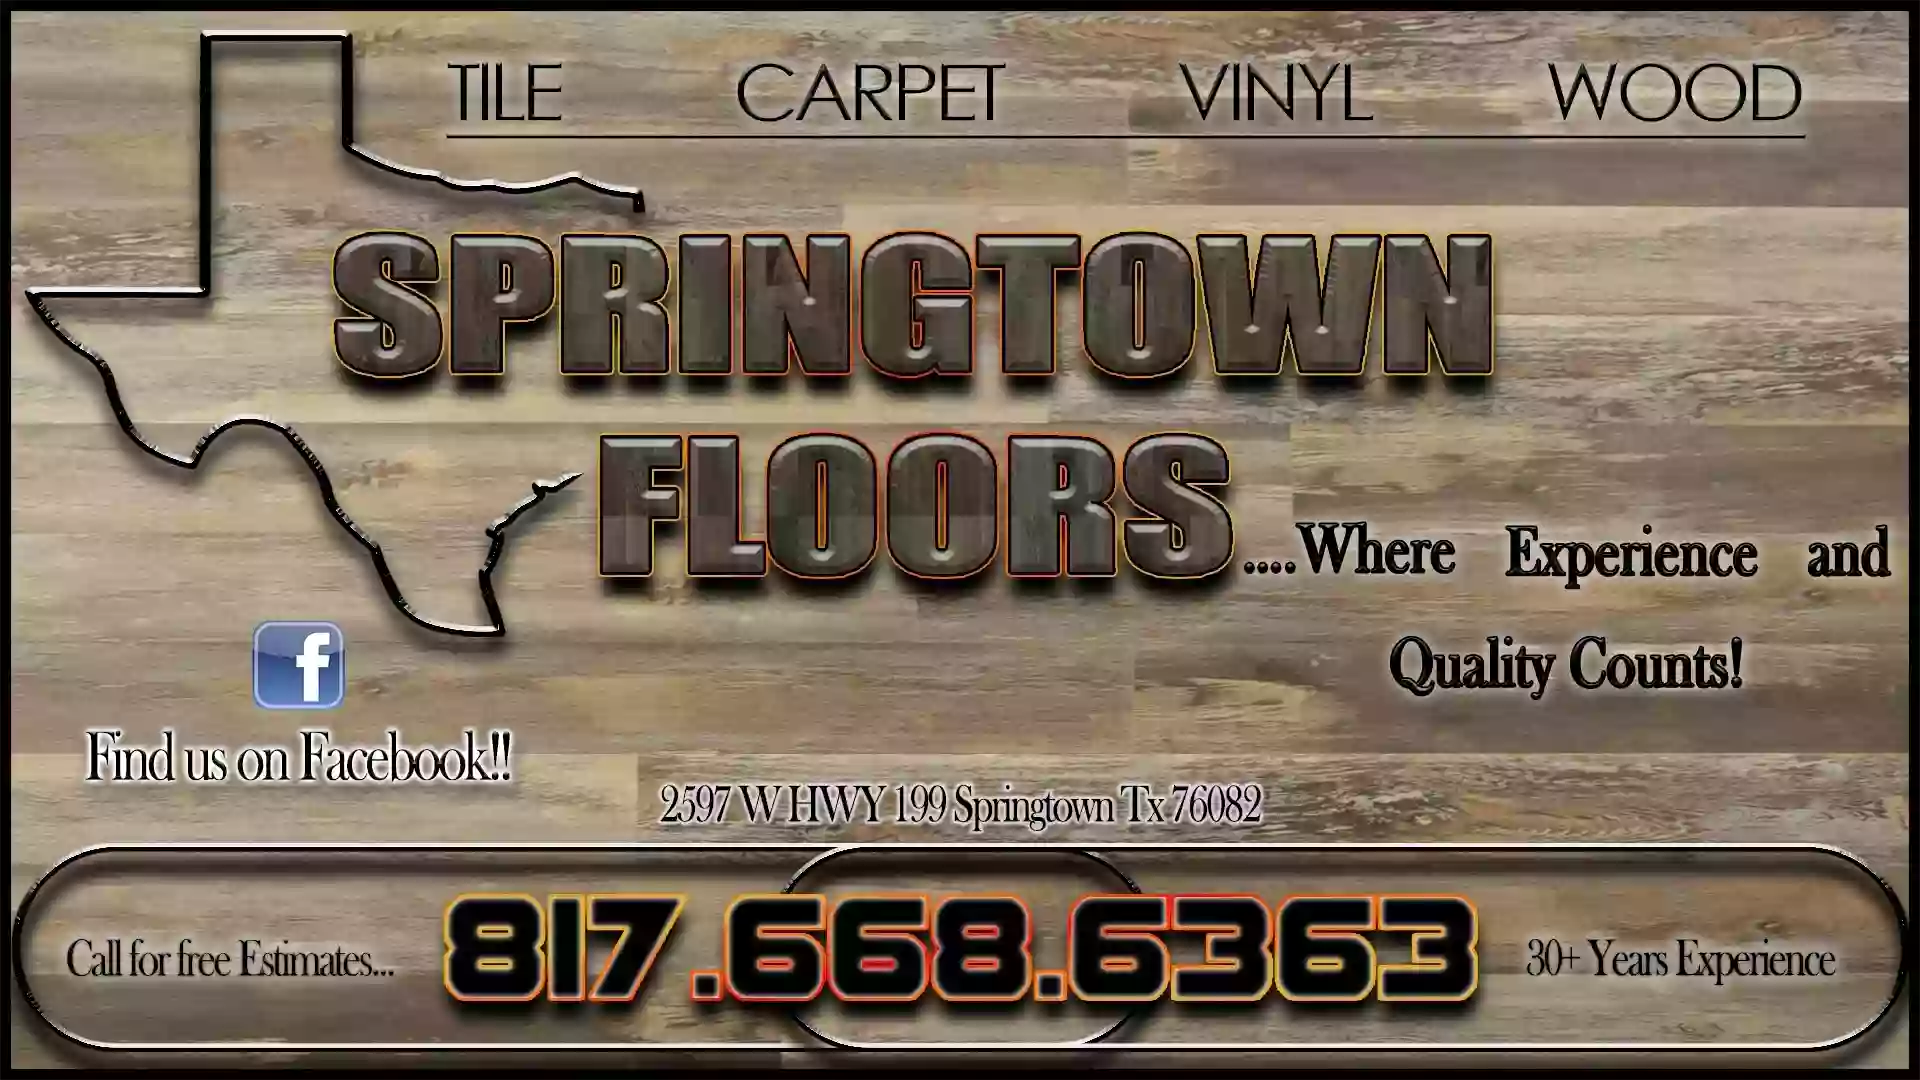 Springtown Floors